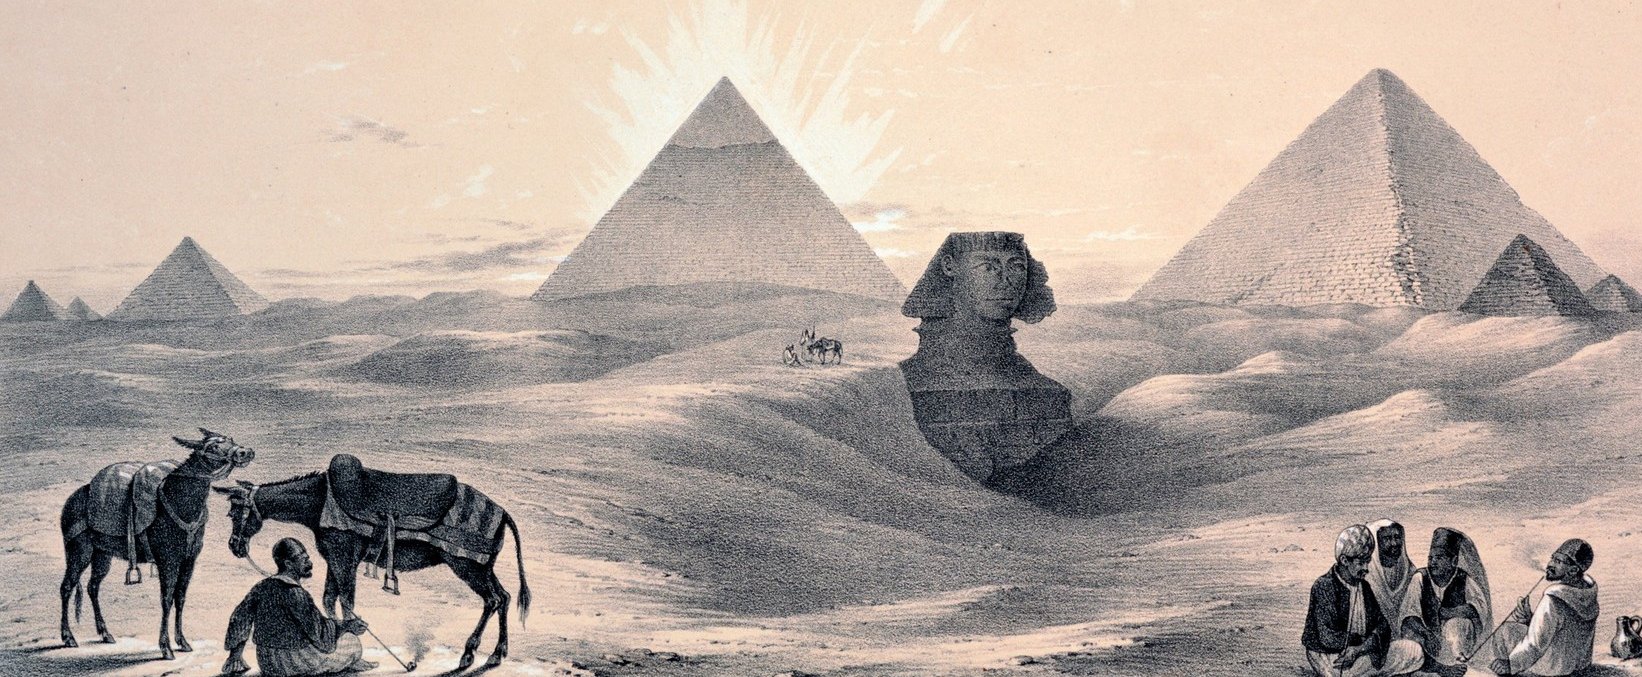 Berezgett a műszer az egyiptomi piramisnál, félelmetesen nagy dolog rejtőzött évezredekig a homok alatt